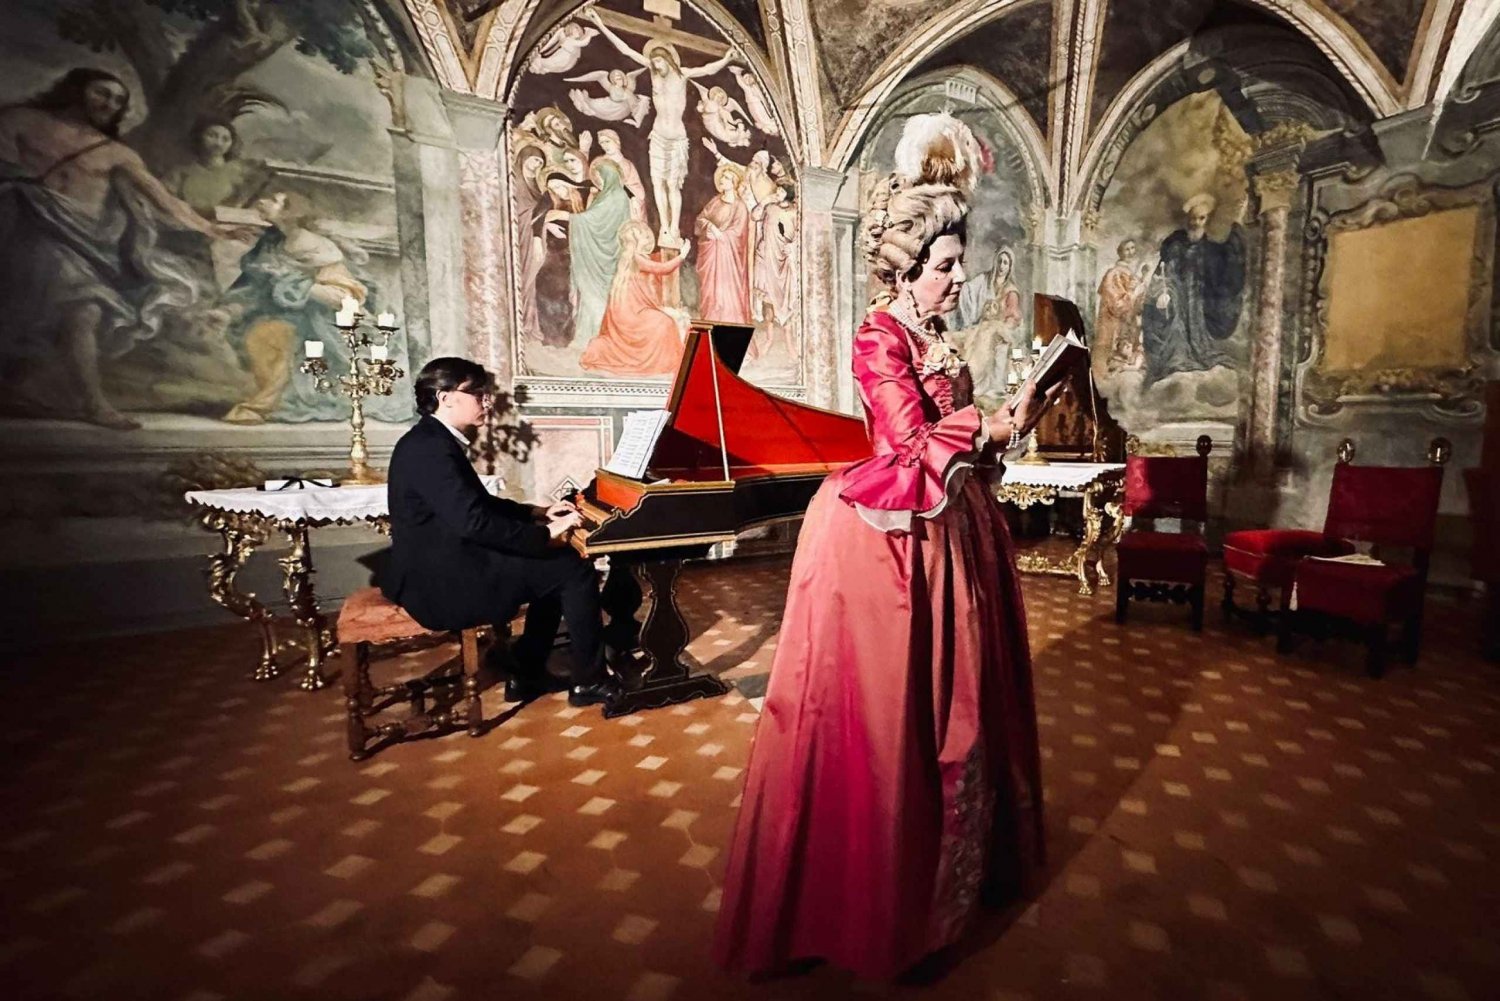 Florenz, Italien: Konzert Oper Florenz